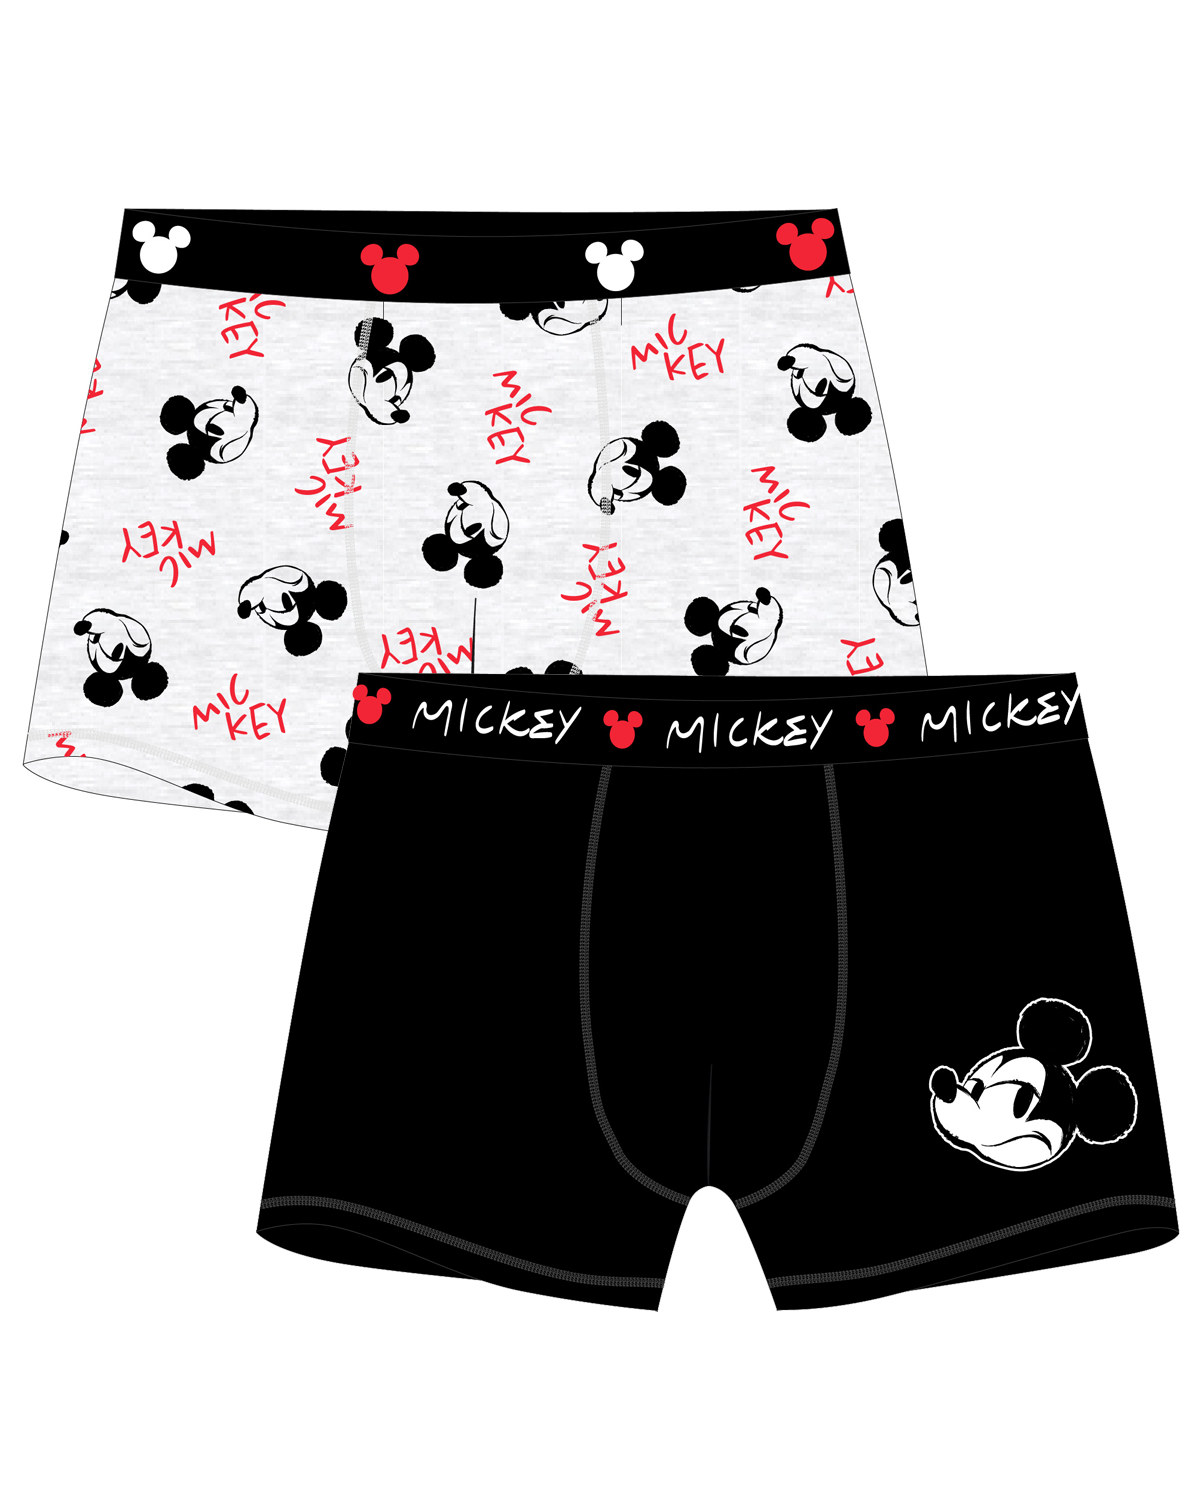 Mickey Mouse - licence Pánské boxerky - Mickey Mouse 5333C143, černá / šedý melír Barva: Mix barev, Velikost: XXL